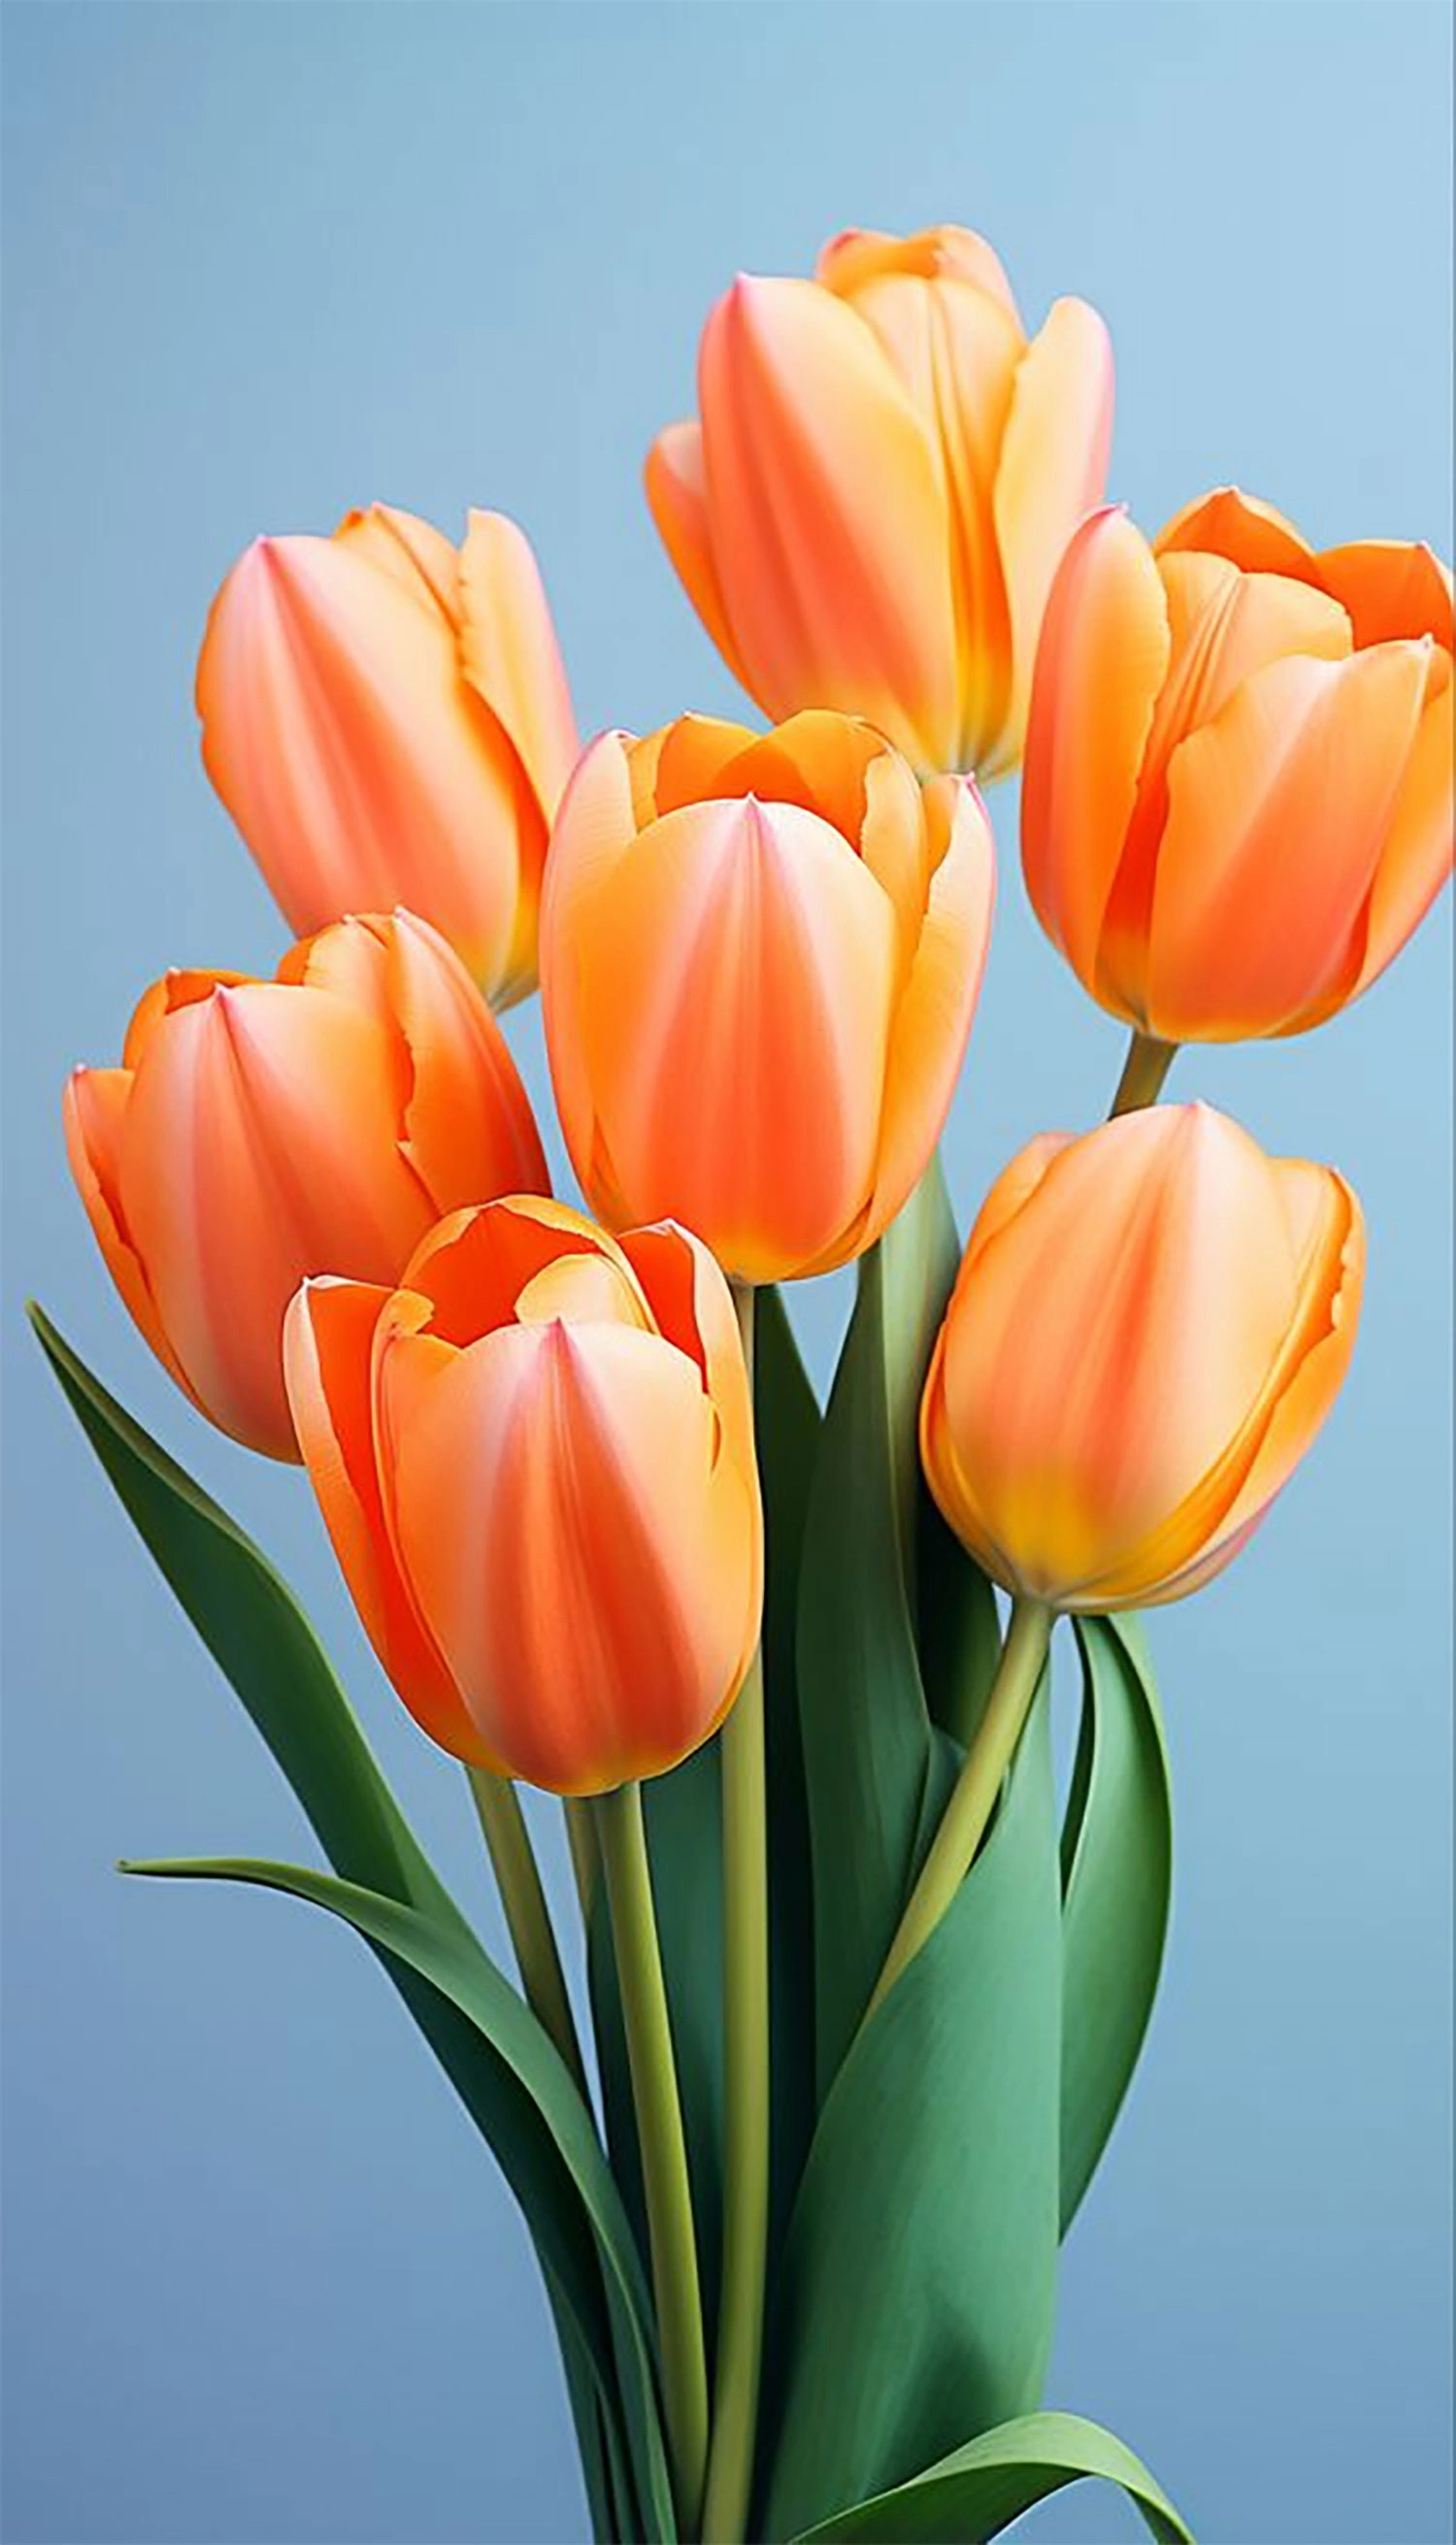  hinh-nen-hoa-tulip-16